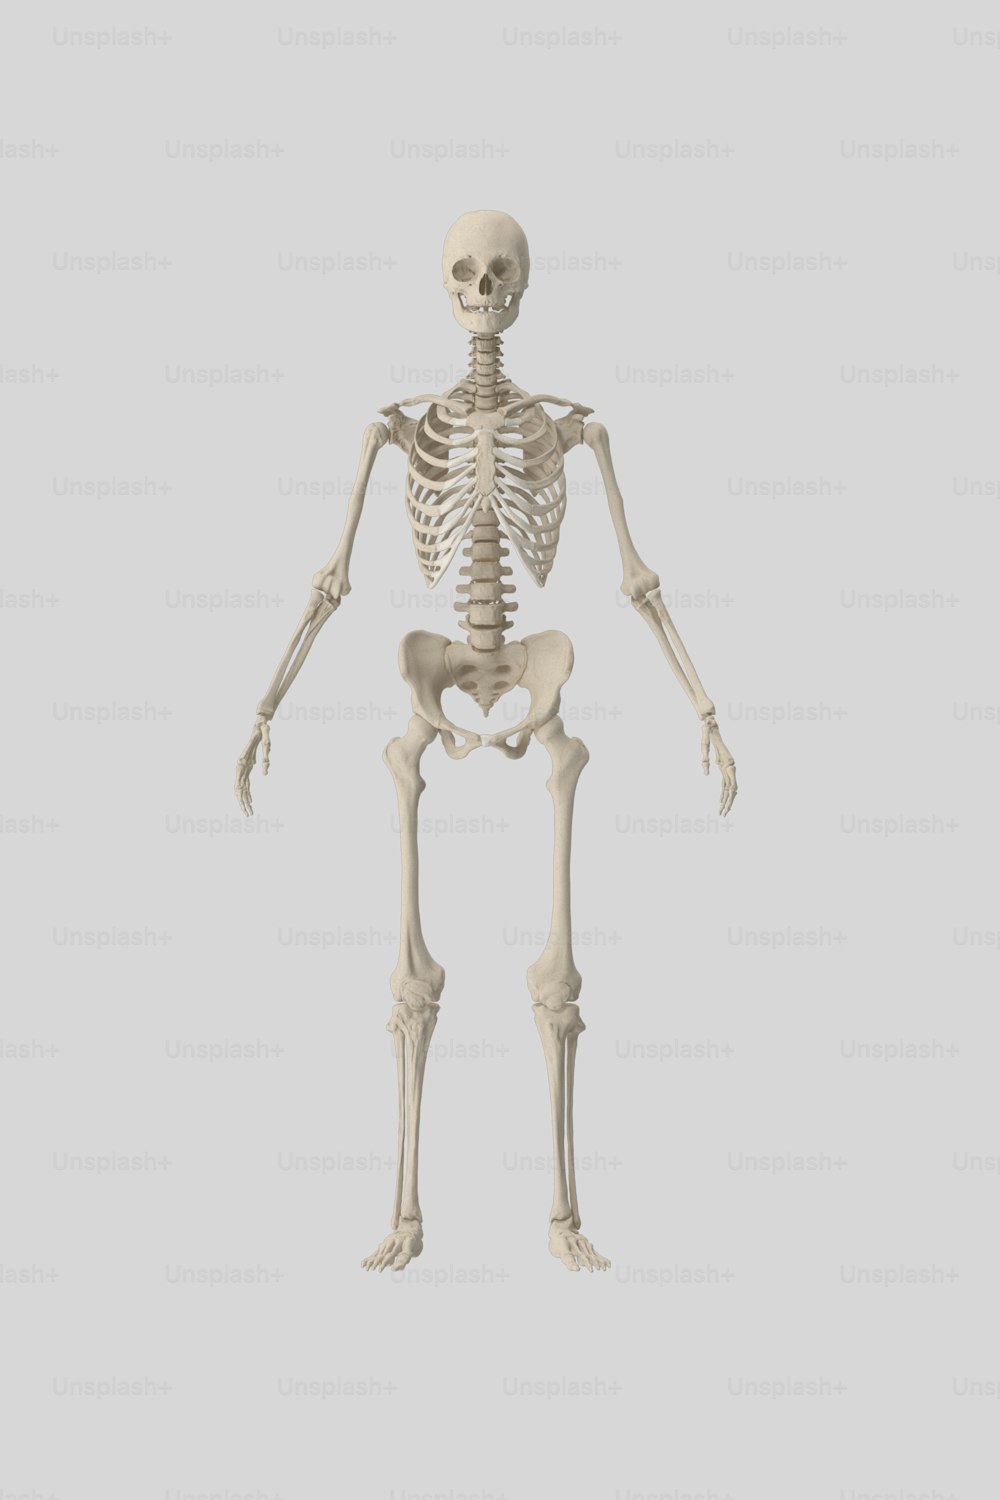 Ein menschliches Skelett ist in diesem Bild zu sehen